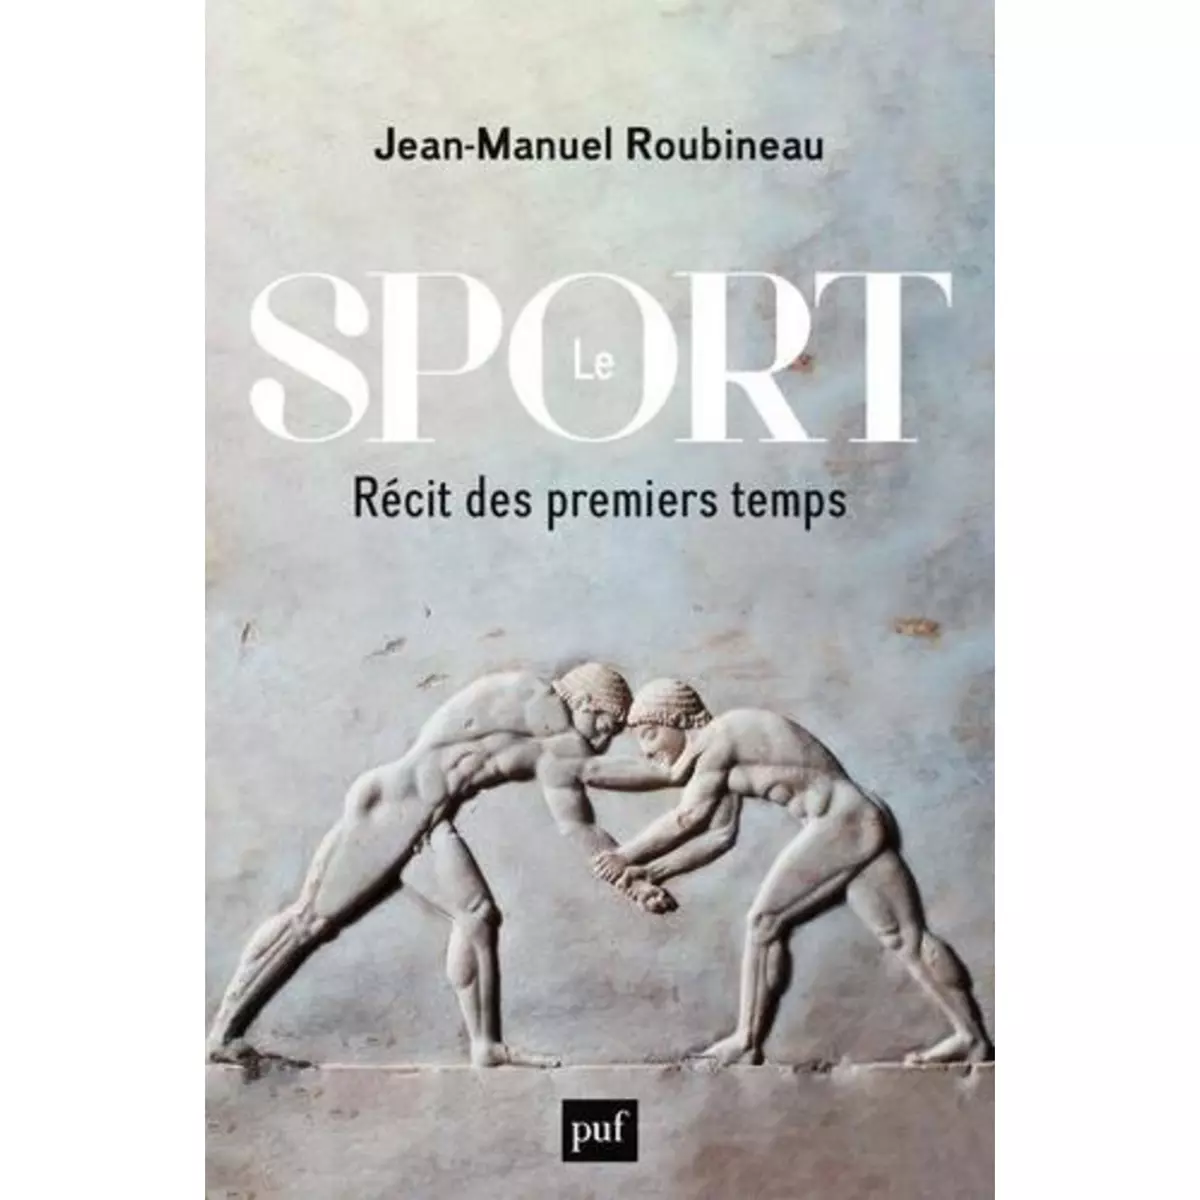  LE SPORT. RECIT DES PREMIERS TEMPS, Roubineau Jean-Manuel